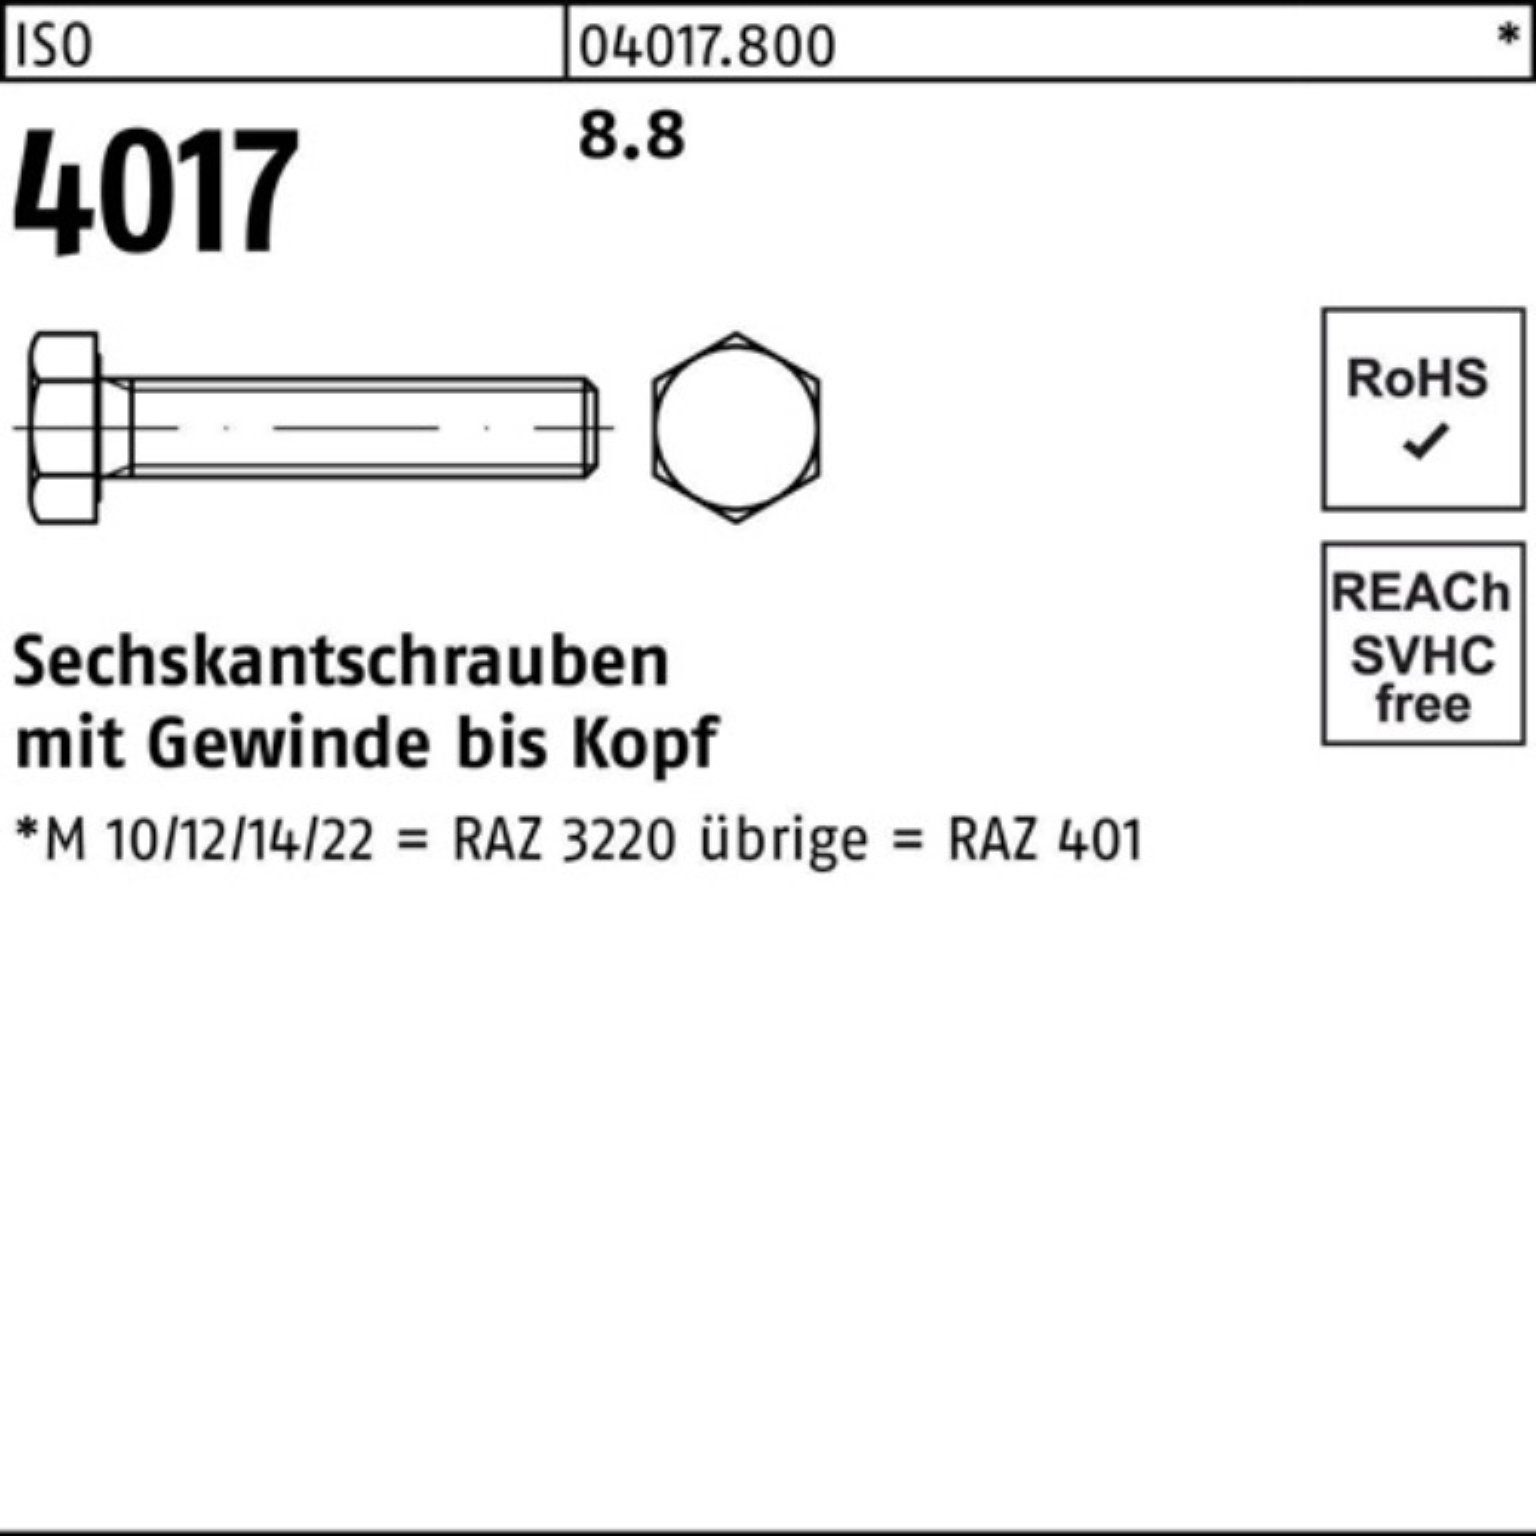 40 VG Sechskantschraube Stück 100 8.8 Bufab Pack 100er 4017 ISO Sechskantschraube M8x ISO 200